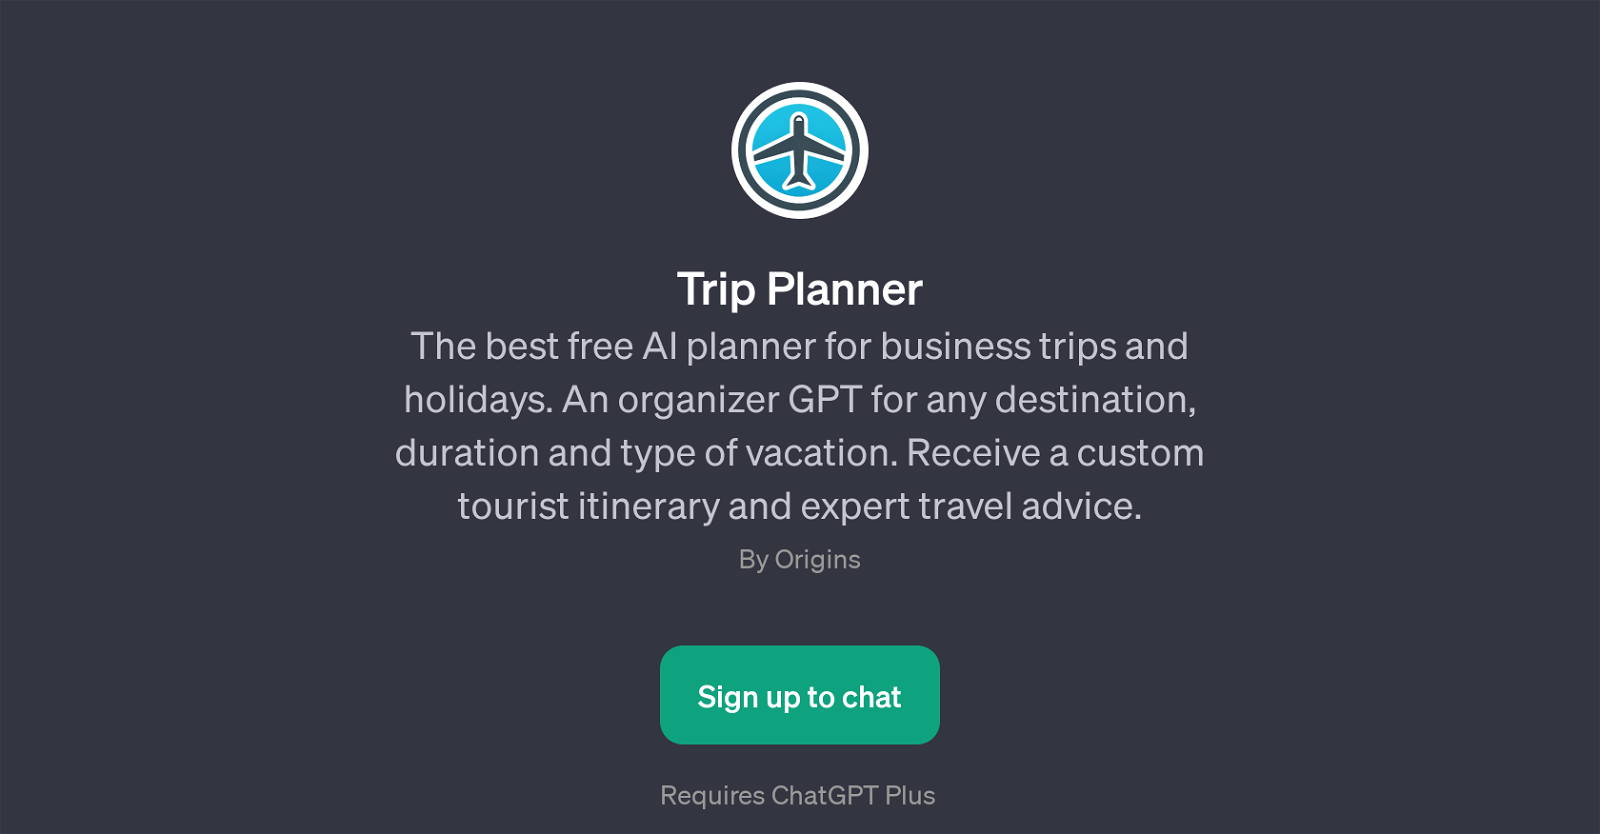 TripPlanner website